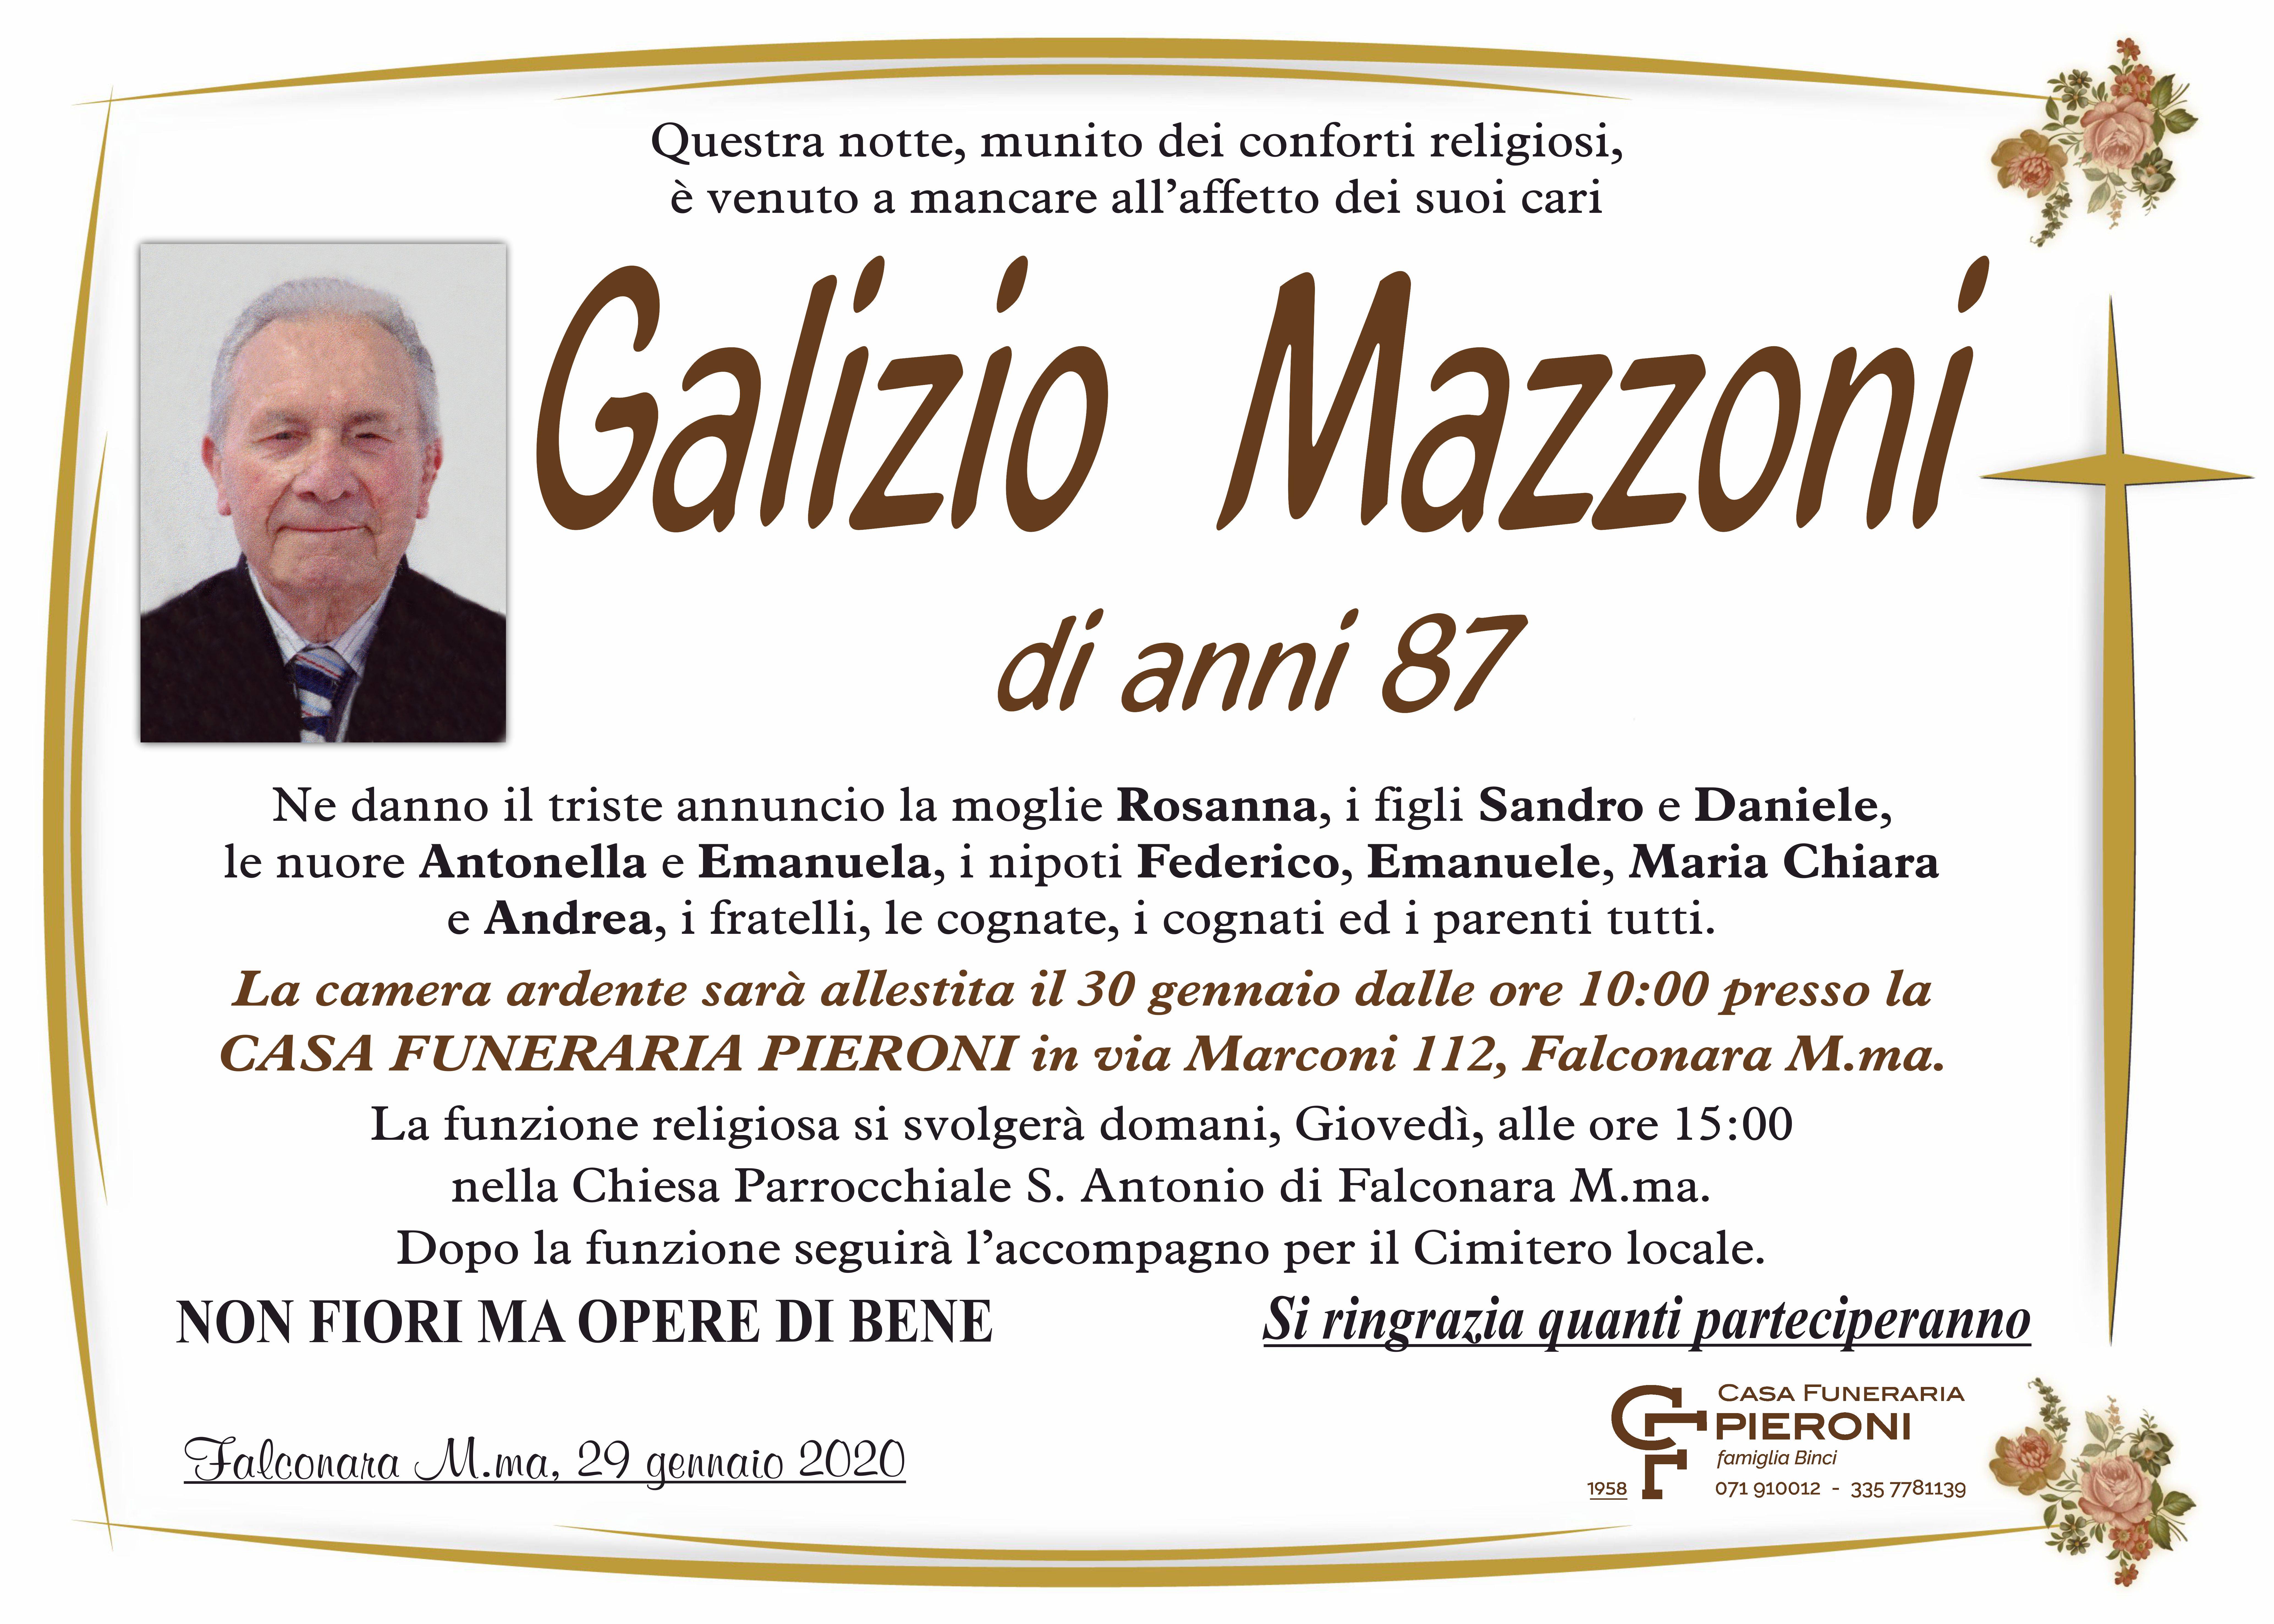 Galizio Mazzoni